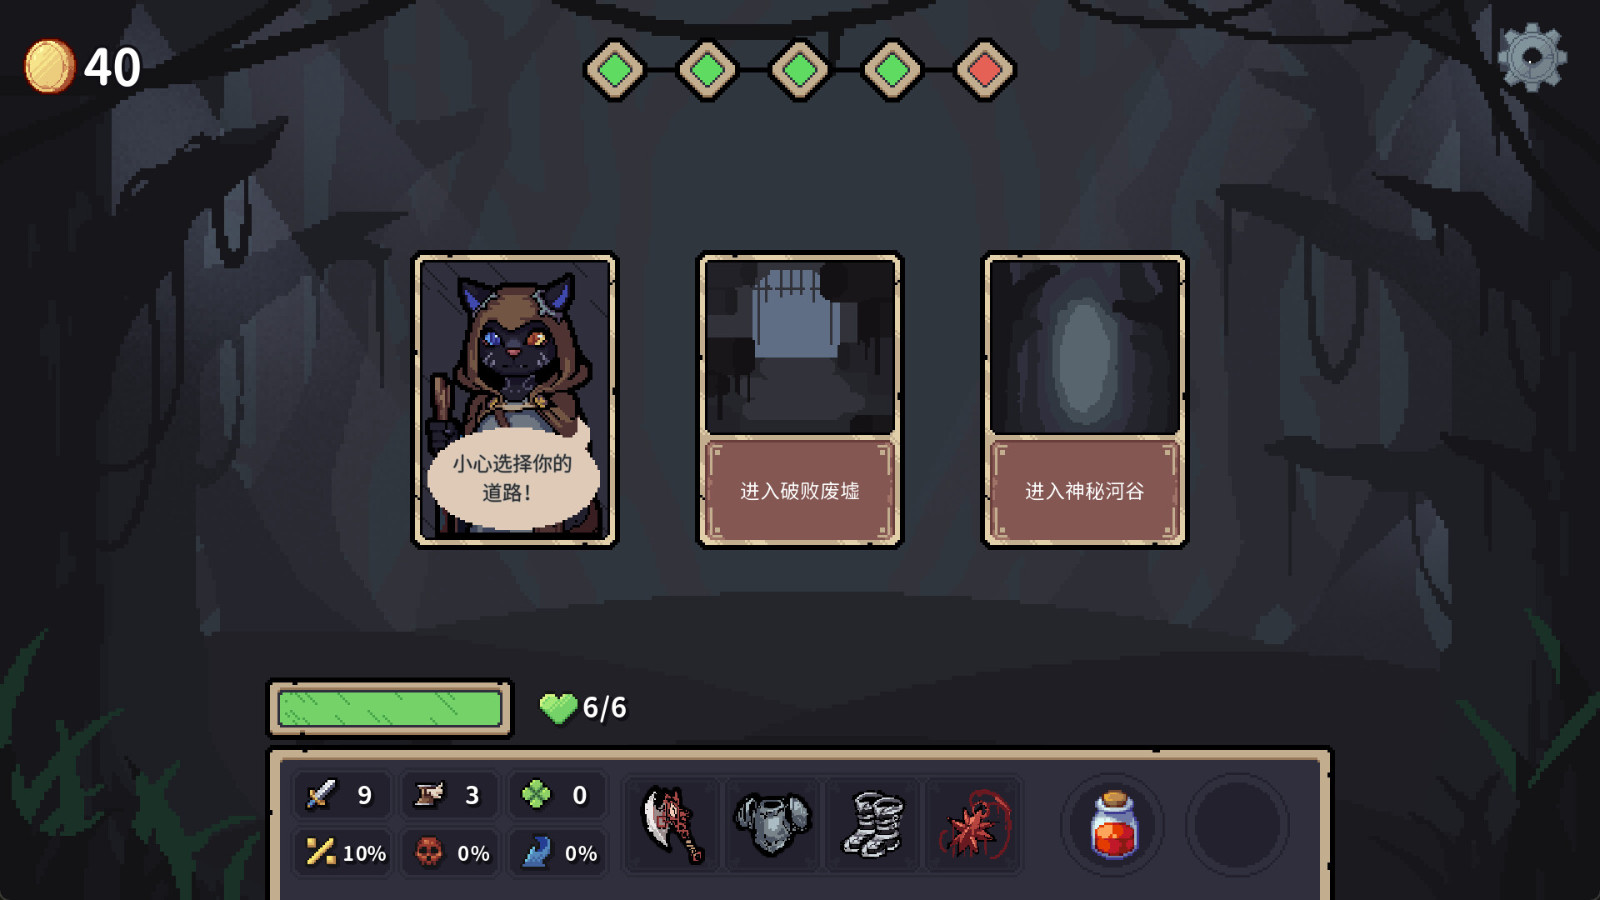 卡牌冒险游戏《迷失之径》Steam页面上线 支持简体中文